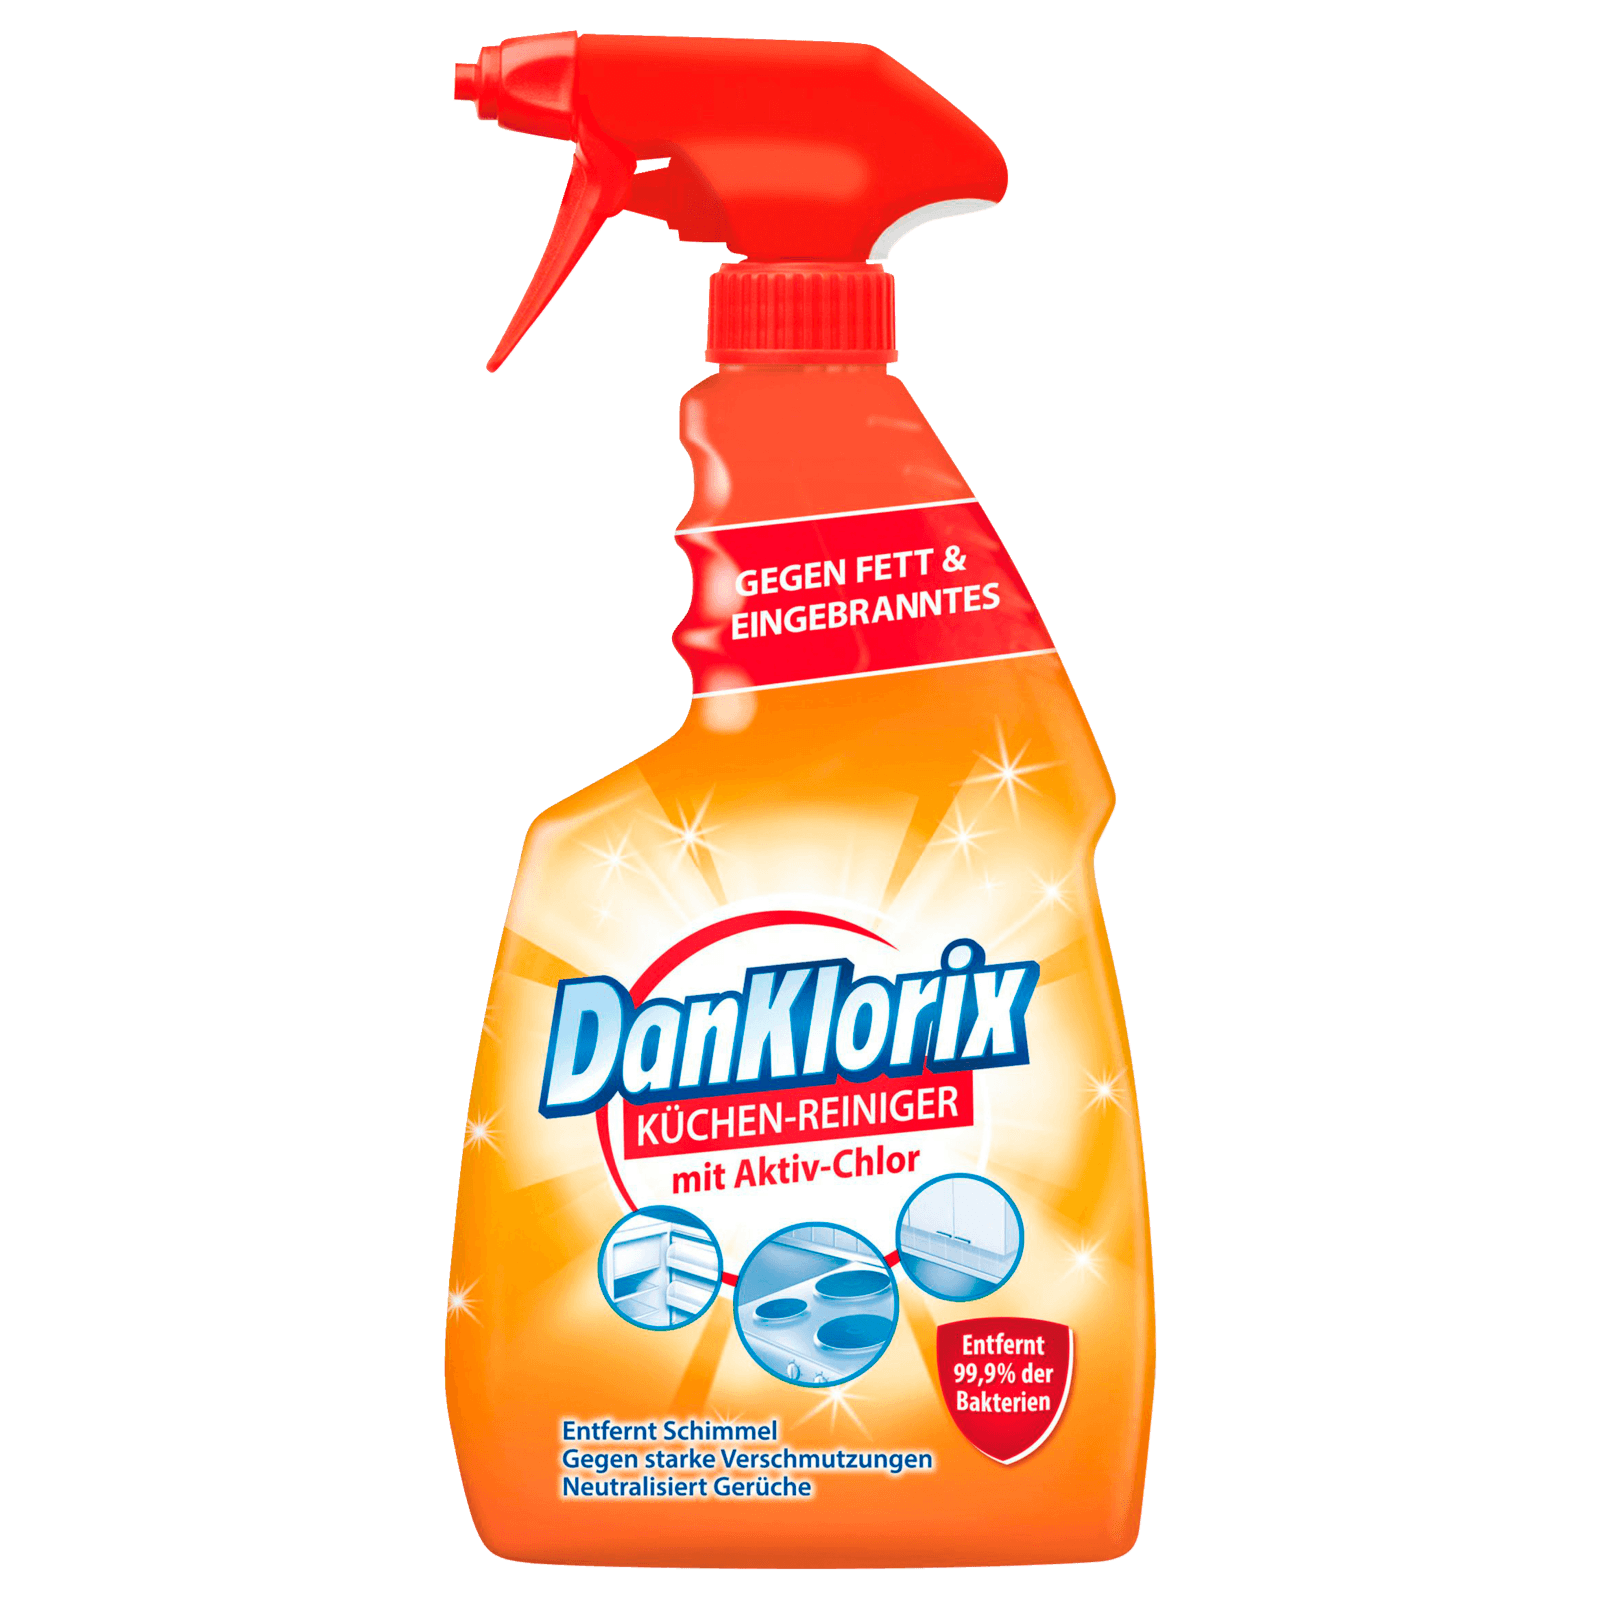 DanKlorix Hygiene-Reiniger Grüne Frische 1,5L